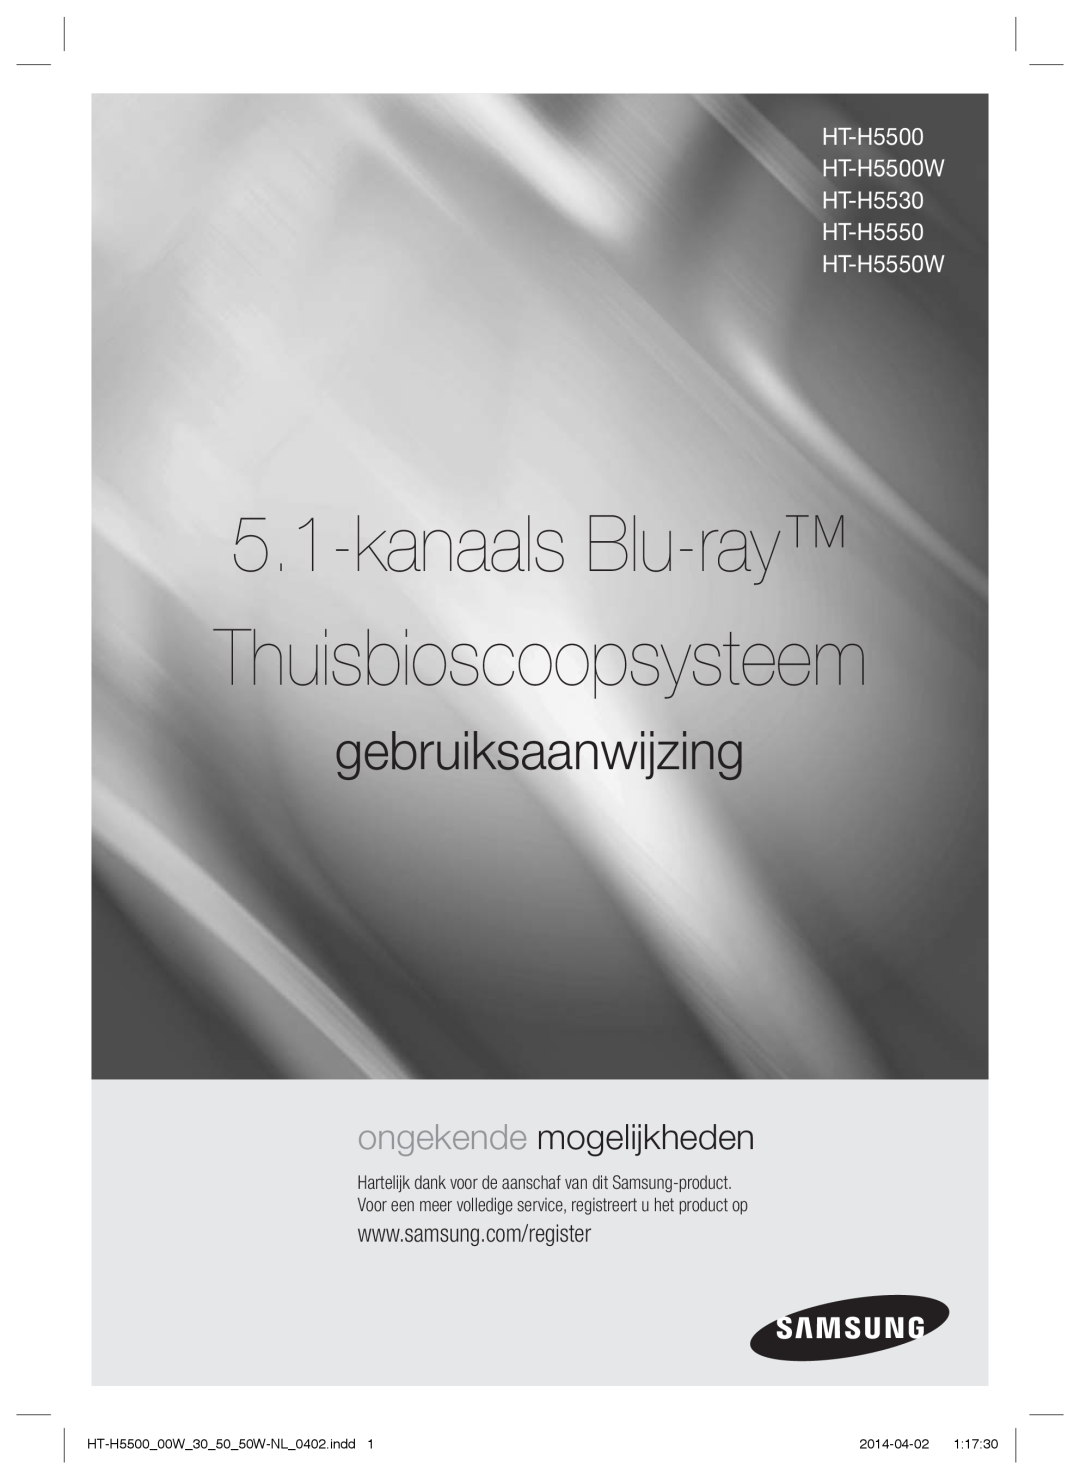 Samsung HT-H5550/XU manual kanaals Blu-ray Thuisbioscoopsysteem, gebruiksaanwijzing, ongekende mogelijkheden, 2014-04-02 